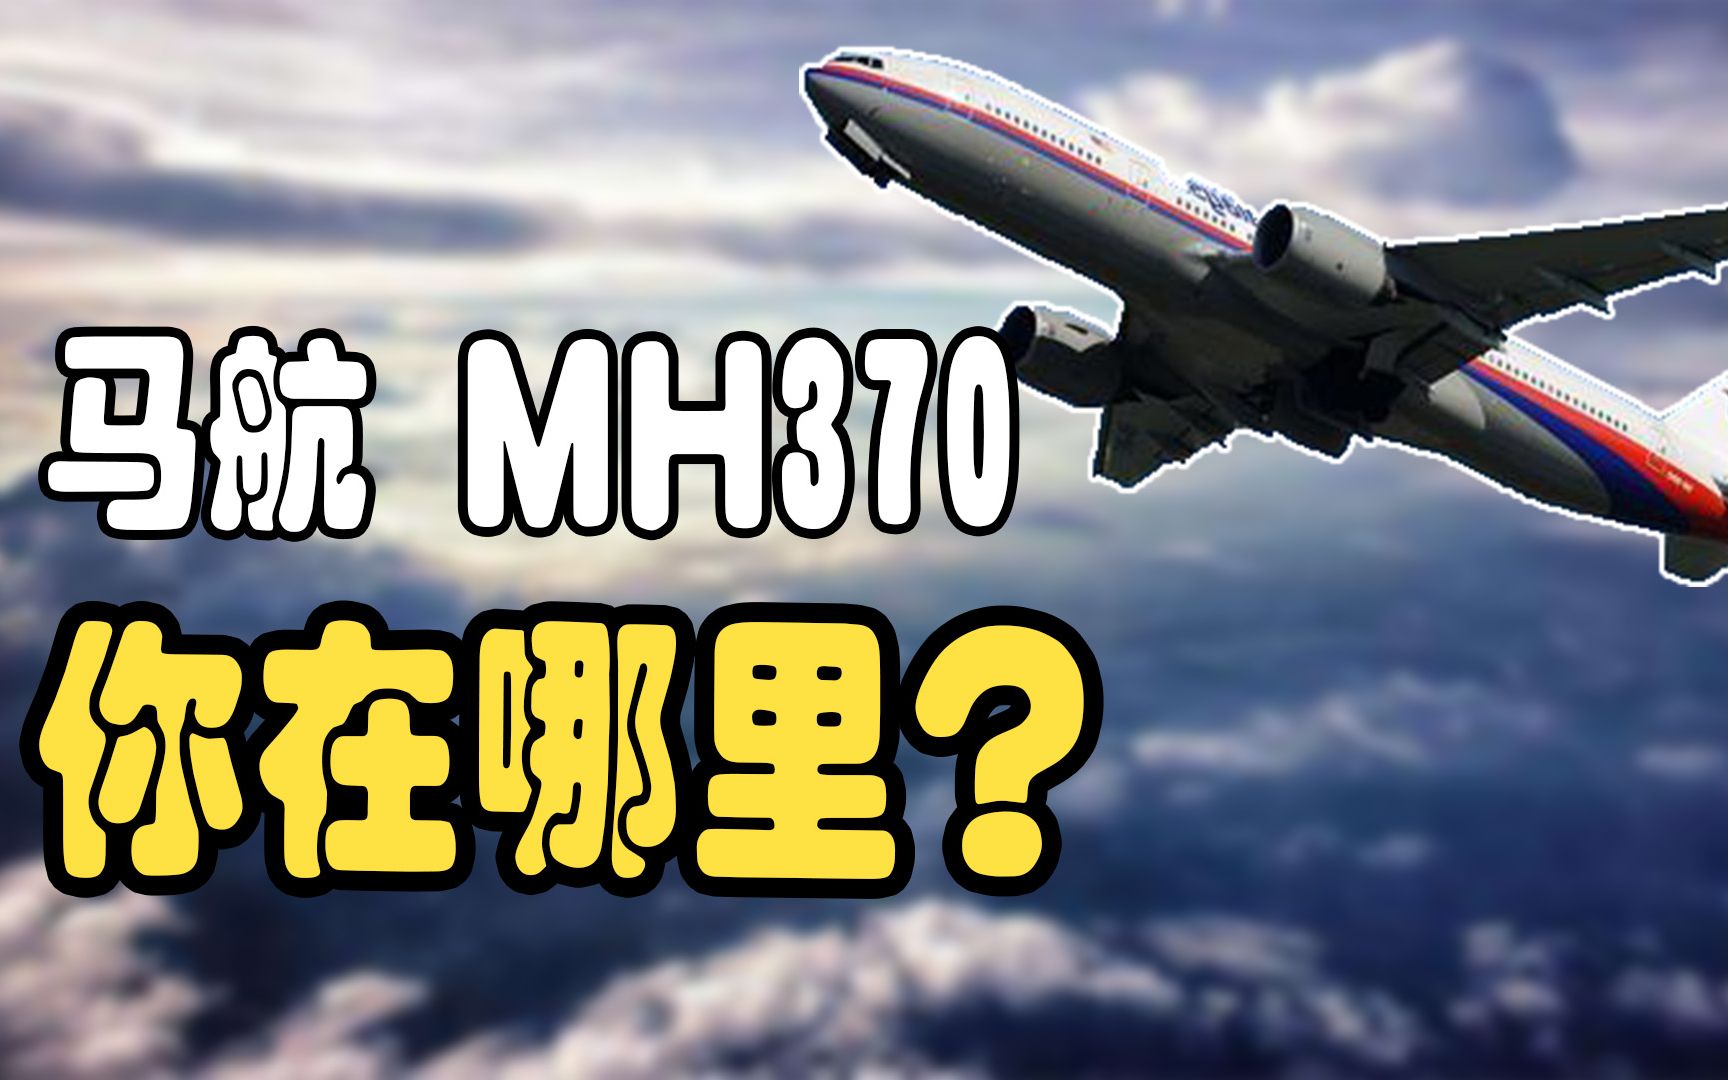 消失6年的飞机， 人为制造的幽灵航班，揭秘马航MH370失踪全过程